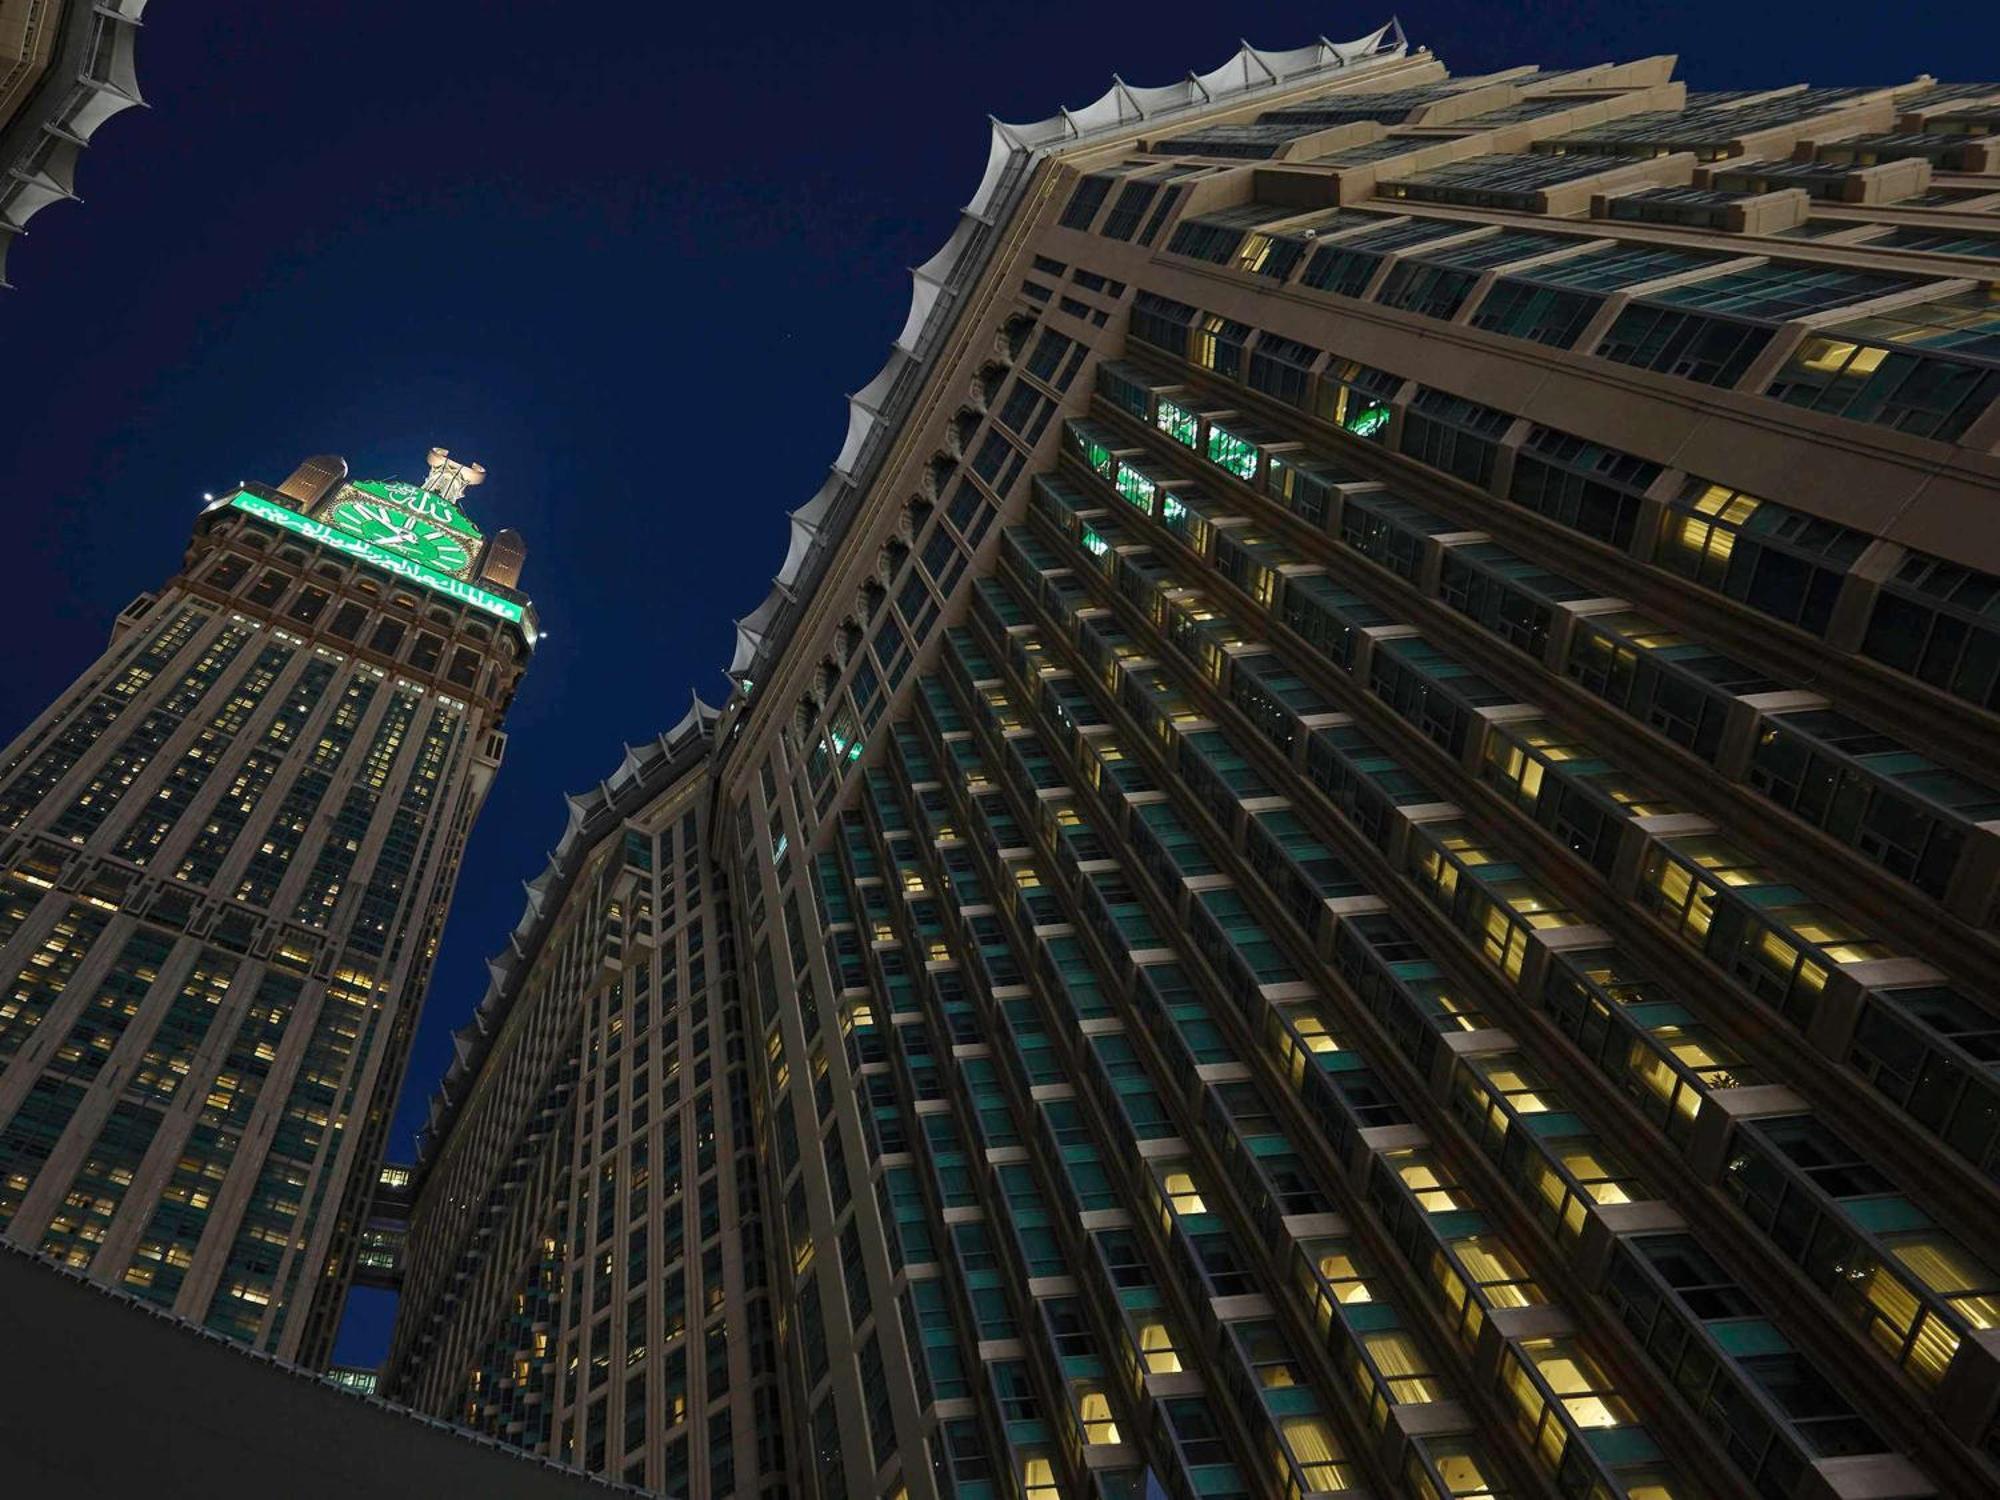 Pullman Zamzam Makkah Hotell Mekka Exteriör bild